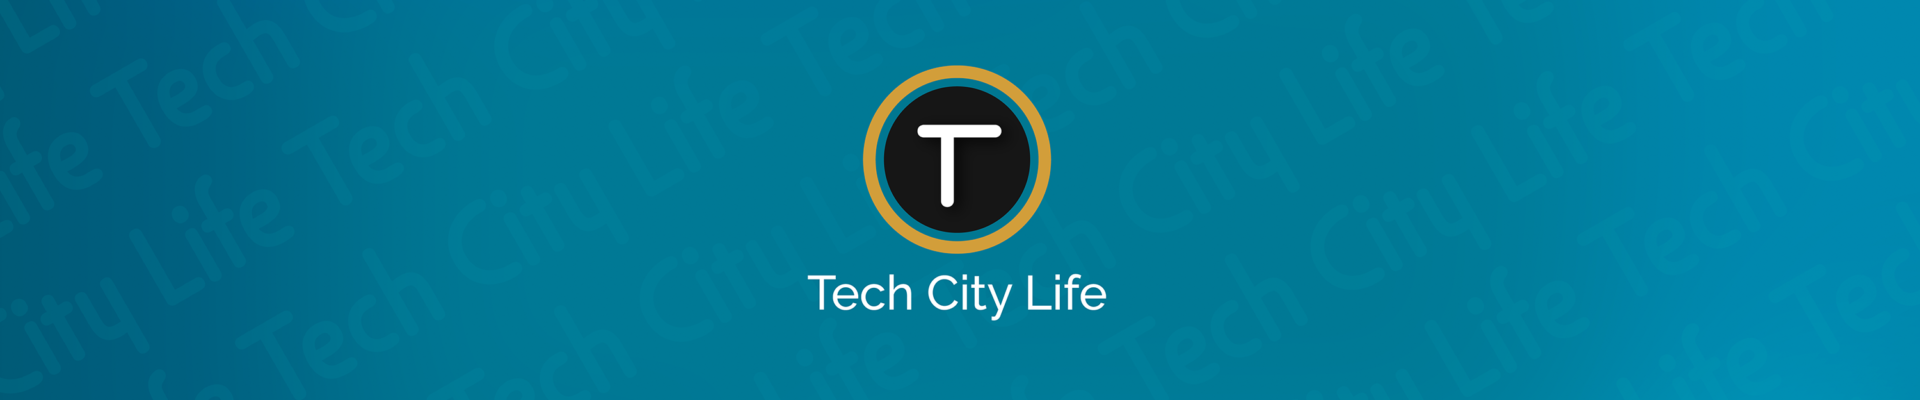 Tech City Life